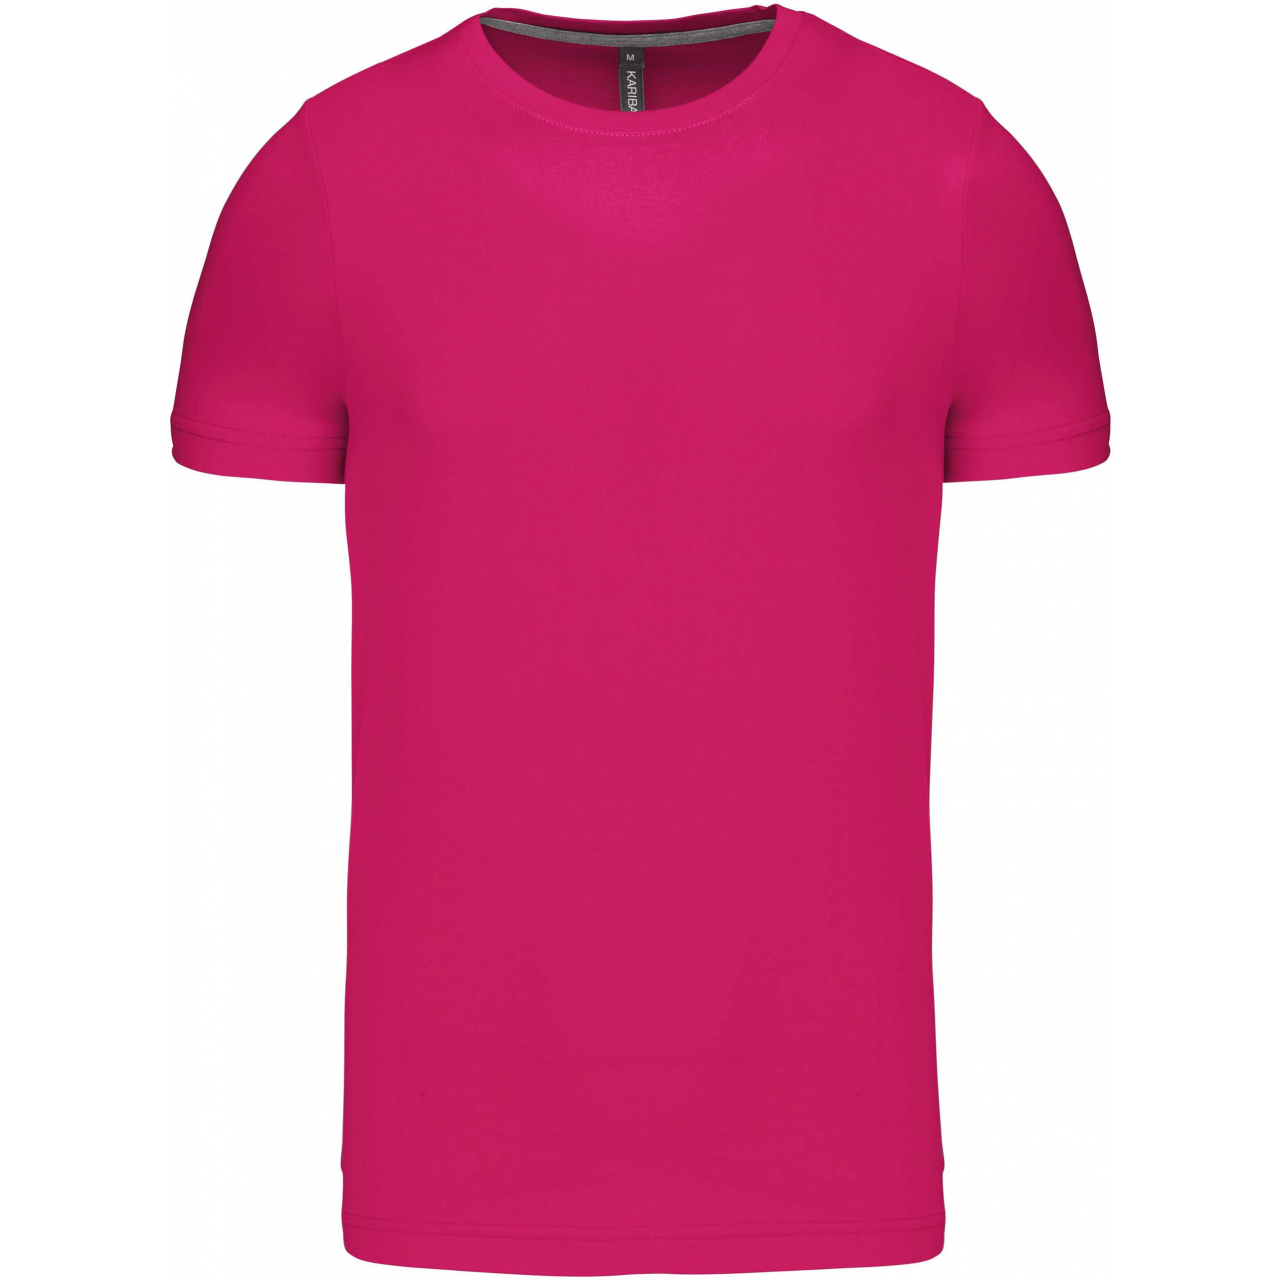 Pánské tričko Kariban krátký rukáv - růžové, L